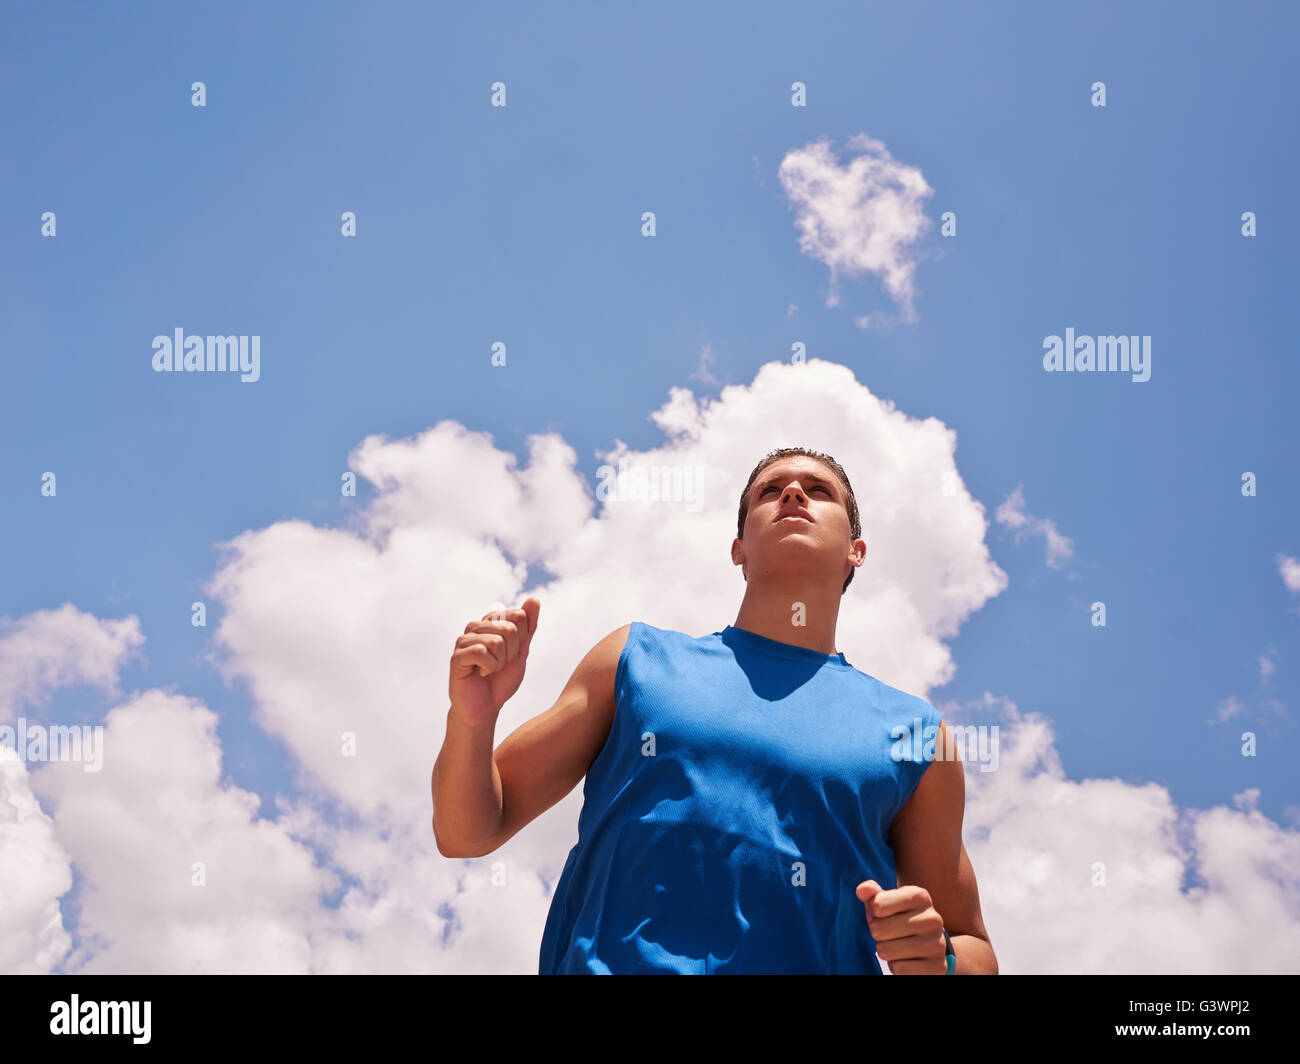 Des jeunes faisant du sport, jogging runner homme contre le ciel bleu. Copier l'espace. Concept de loisirs, santé, loisirs, Banque D'Images